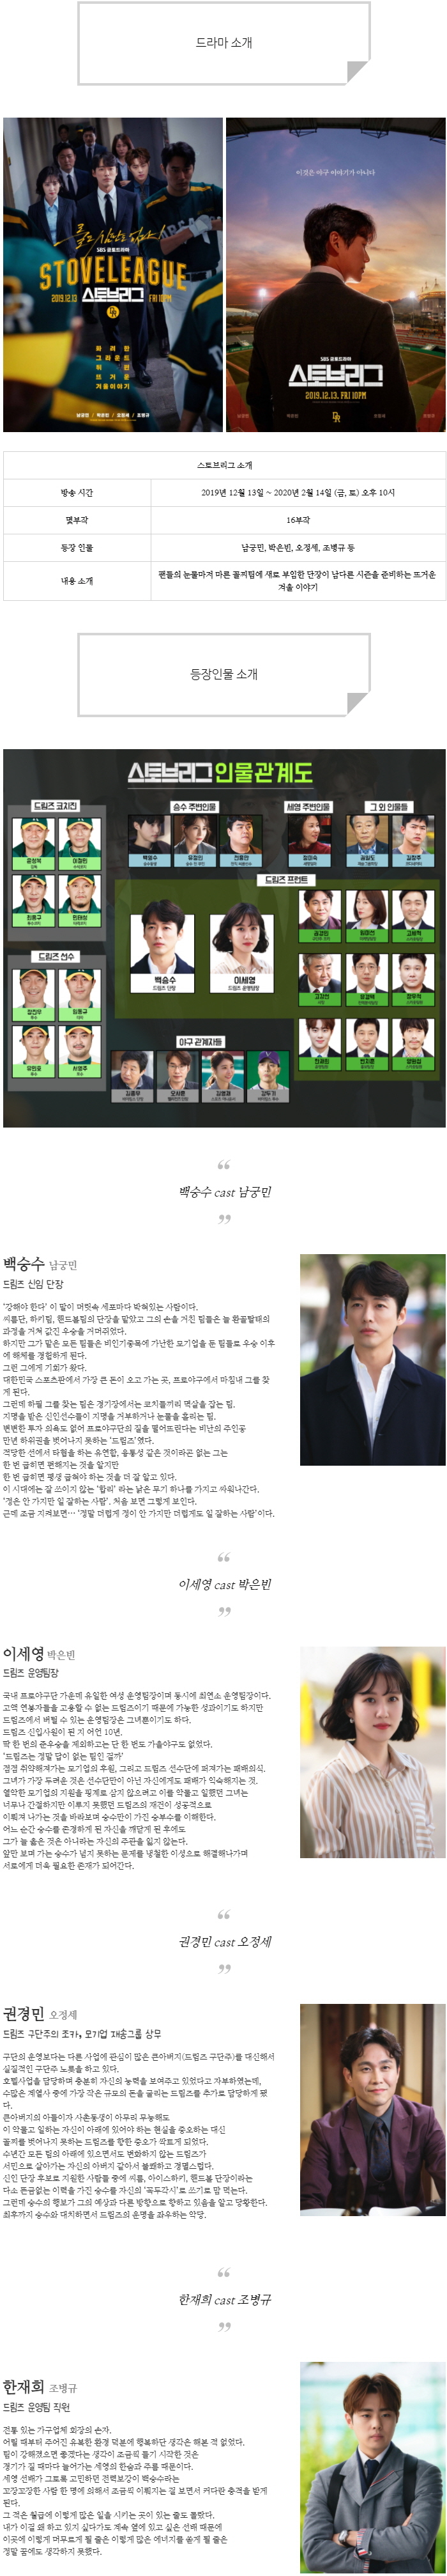 [금토드라마] 스토브리그 인물관계도, 몇부작, 정보 소개